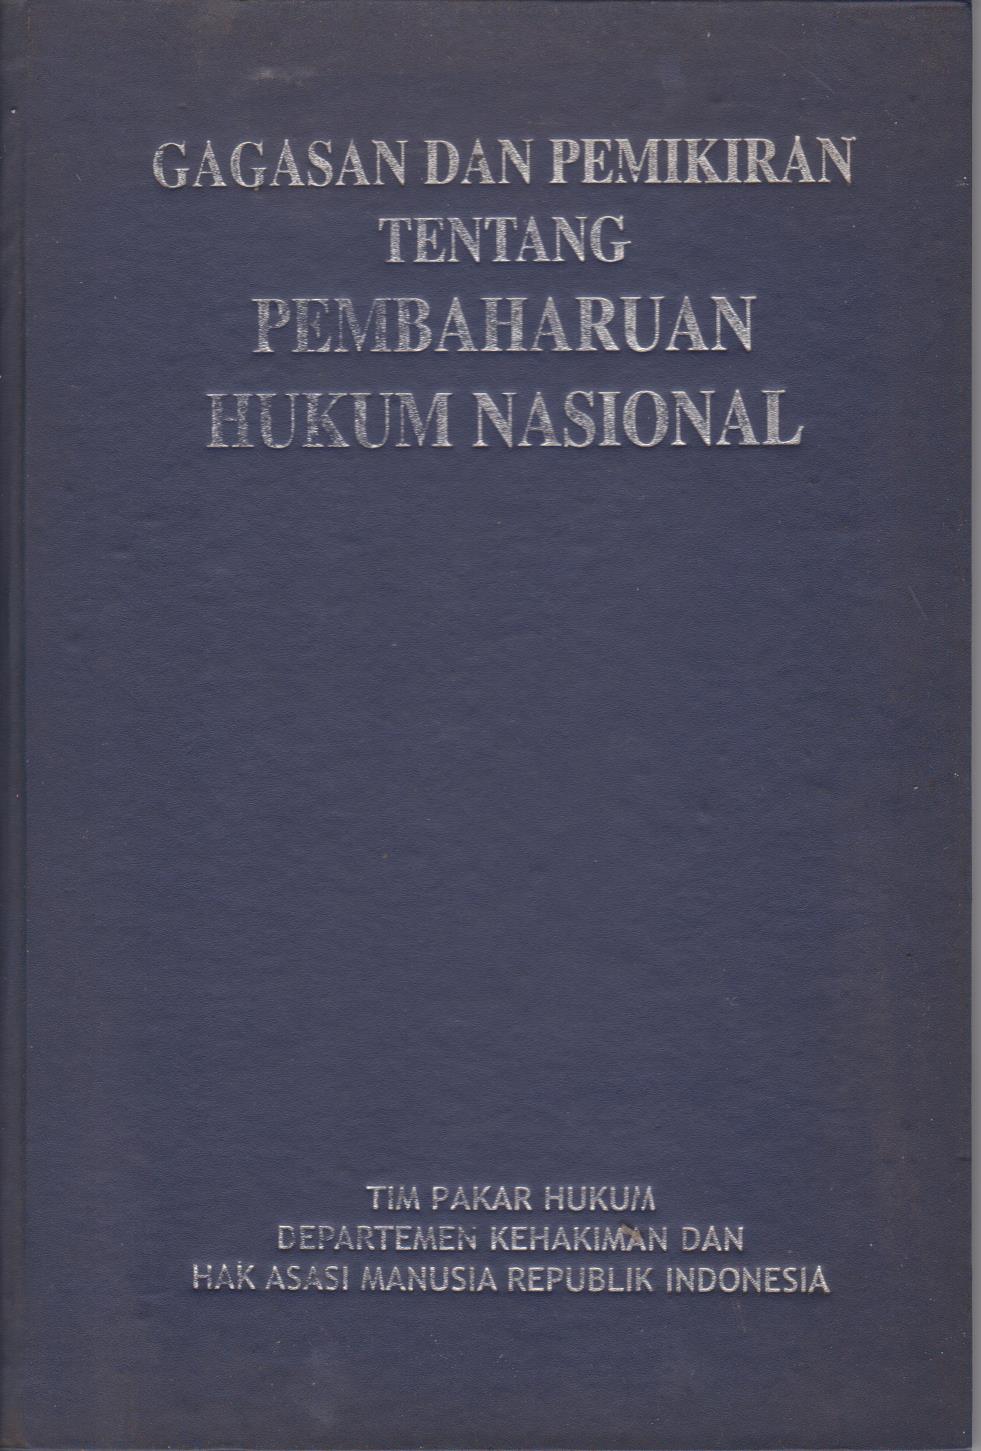 Gagasan Dan Pemikiran Tentang Pembaharuan Hukum Nasional Volume III